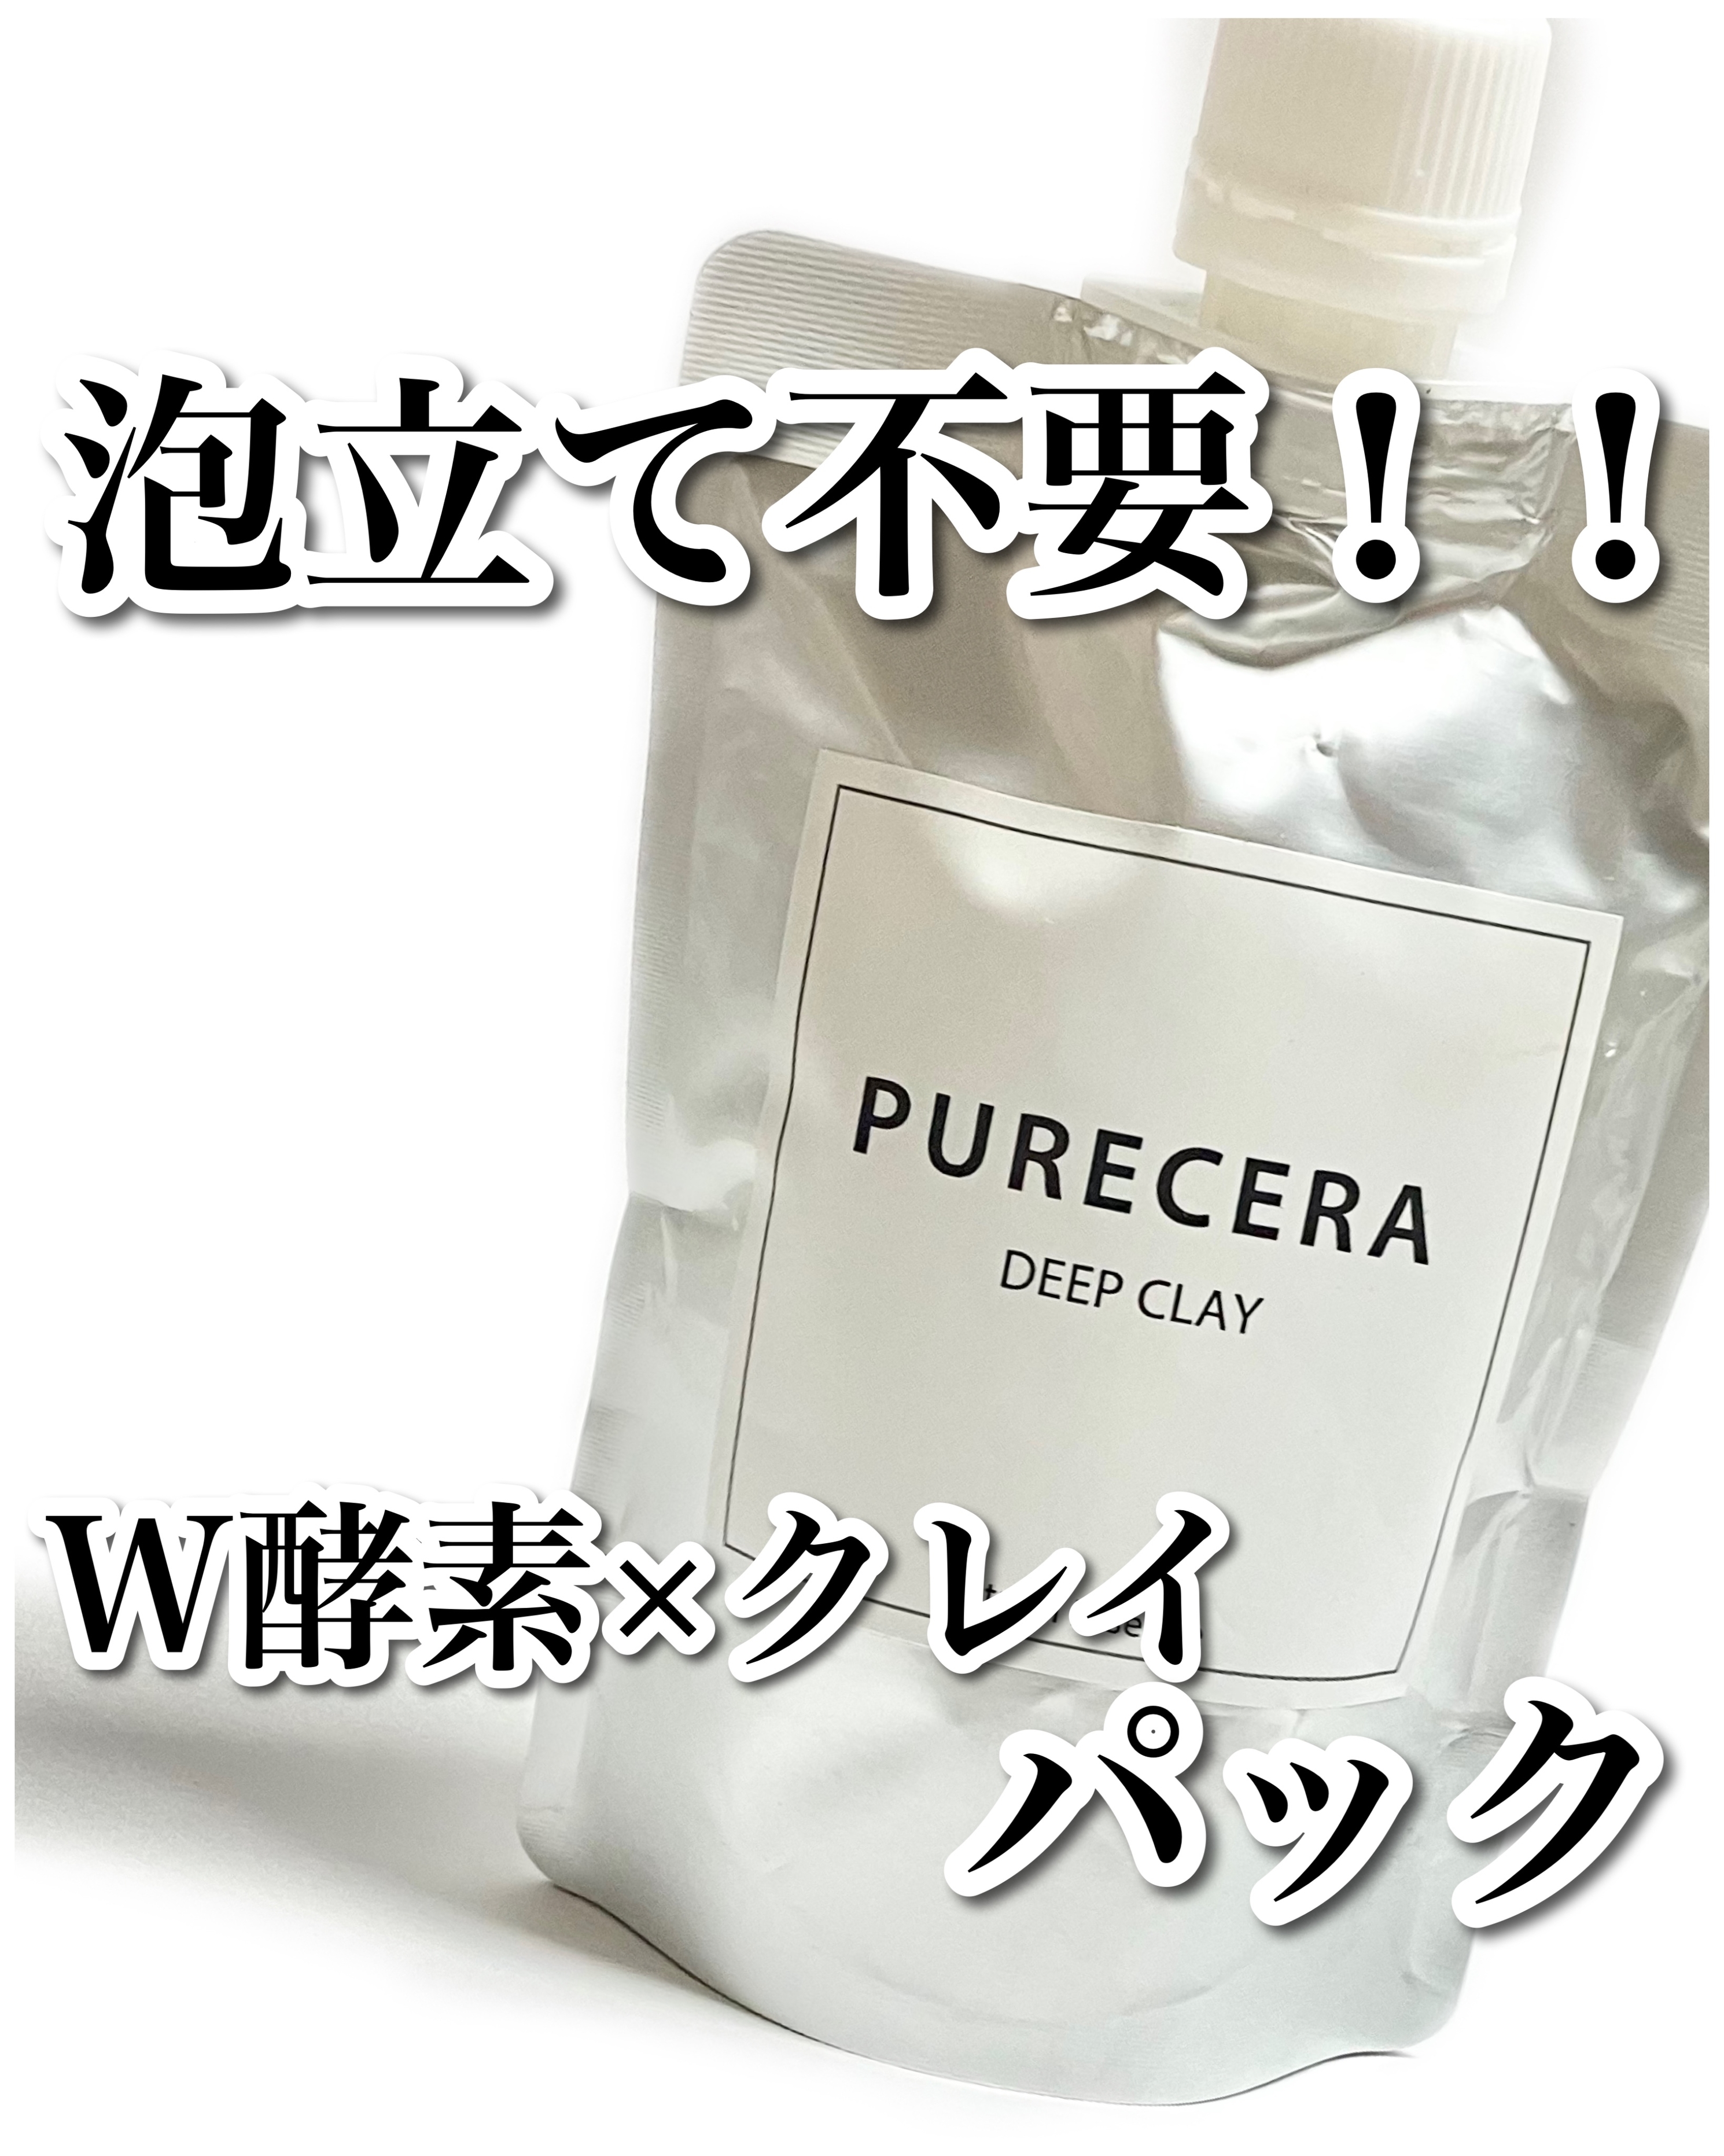 PURECERA(ピュアセラ) ディープクレイの良い点・メリットに関するぶるどっくさんの口コミ画像1